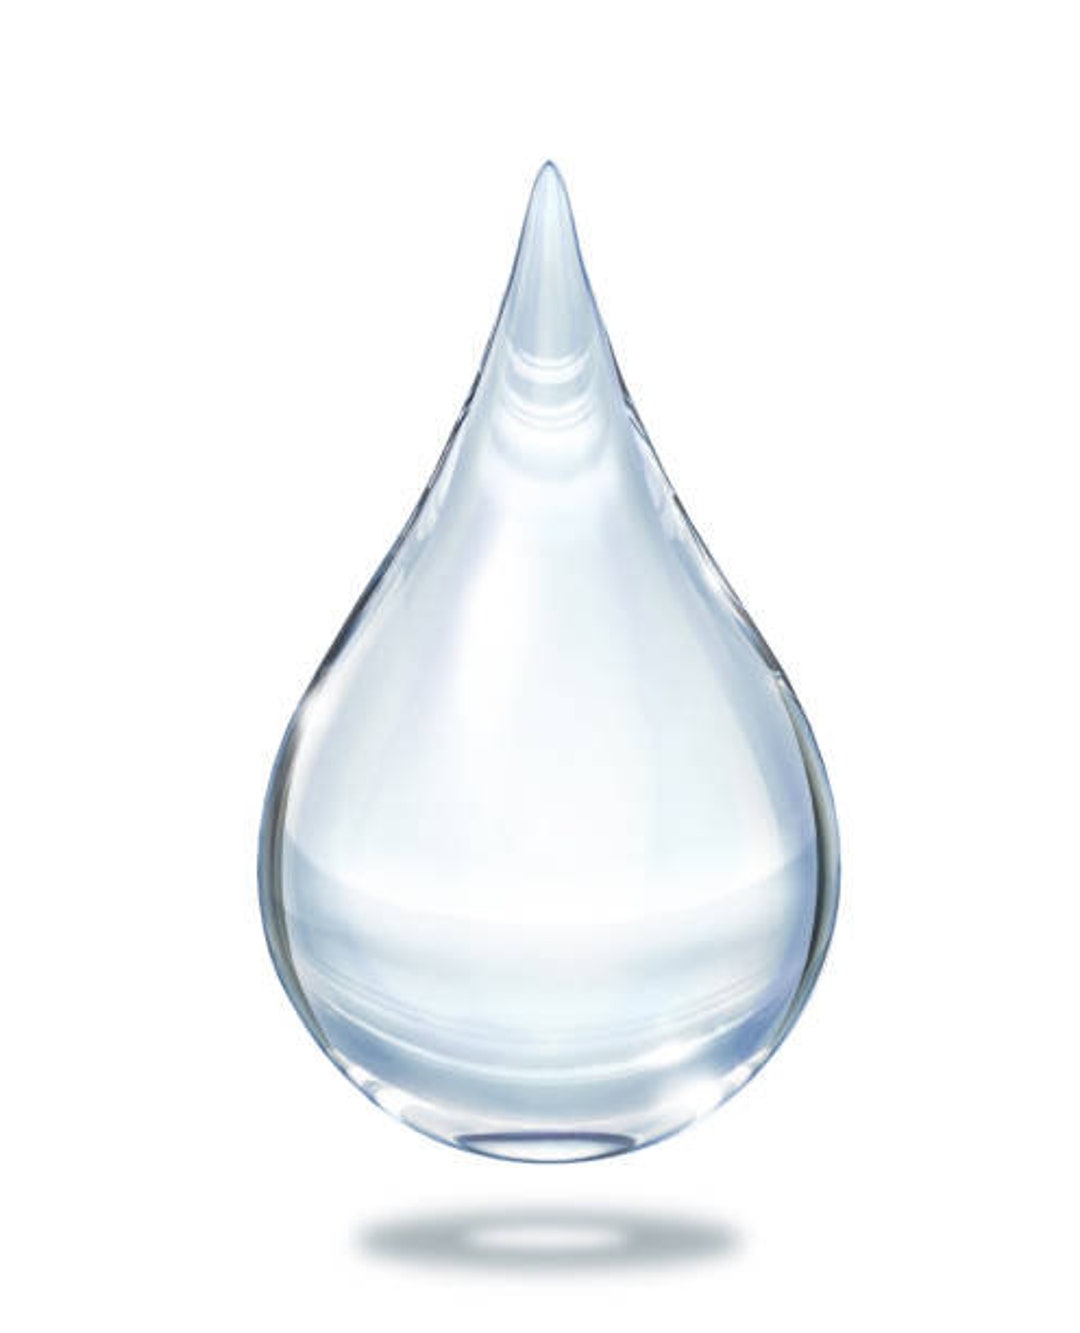 Liquid Germall Plus Preservative 化妆品防腐剂250g / 500g